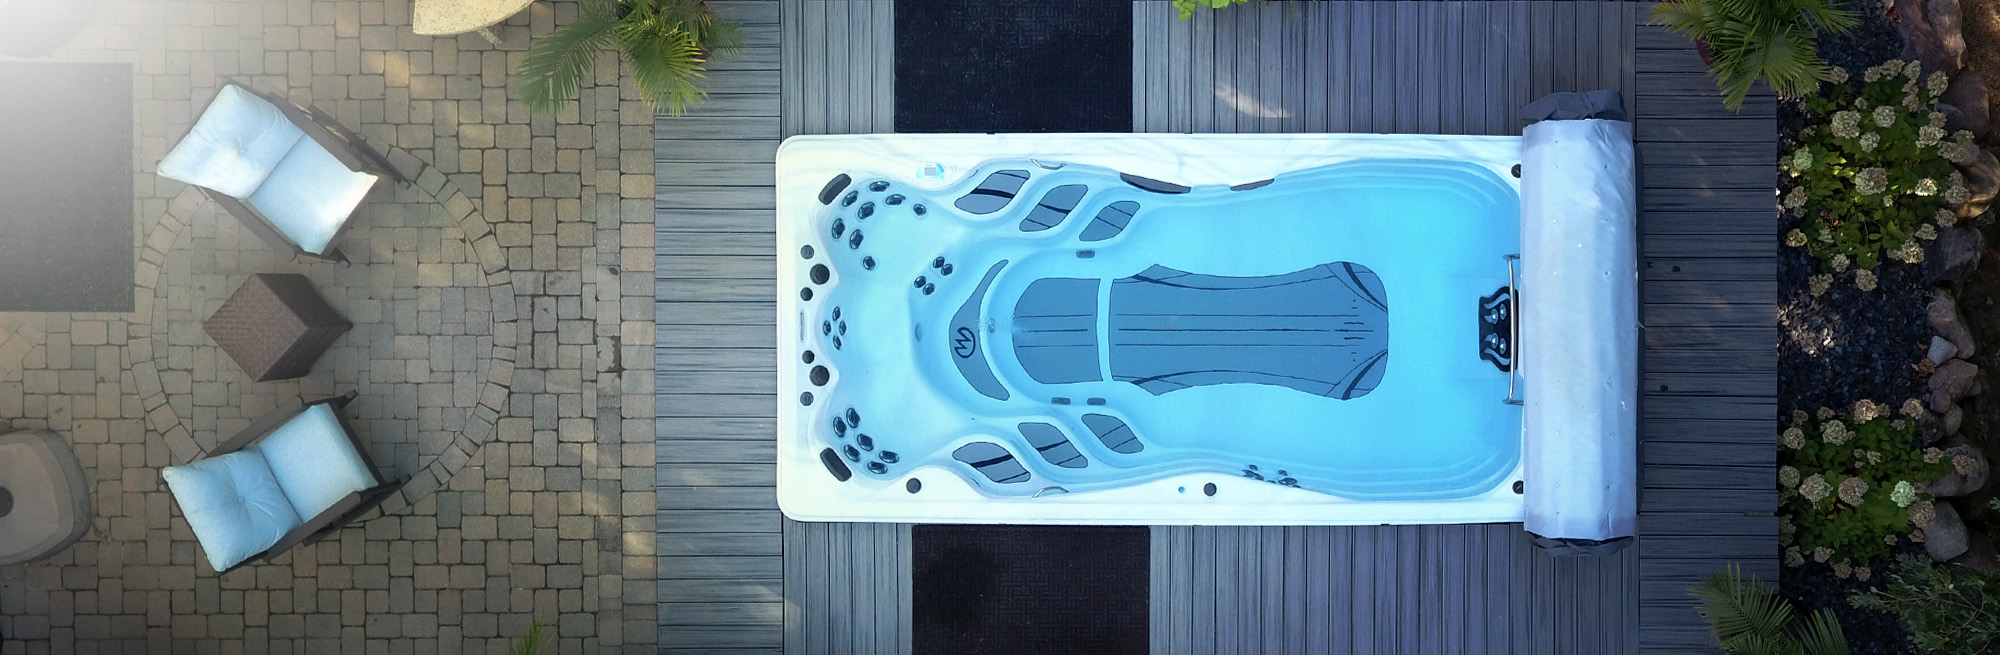 Drone view of a swim spa